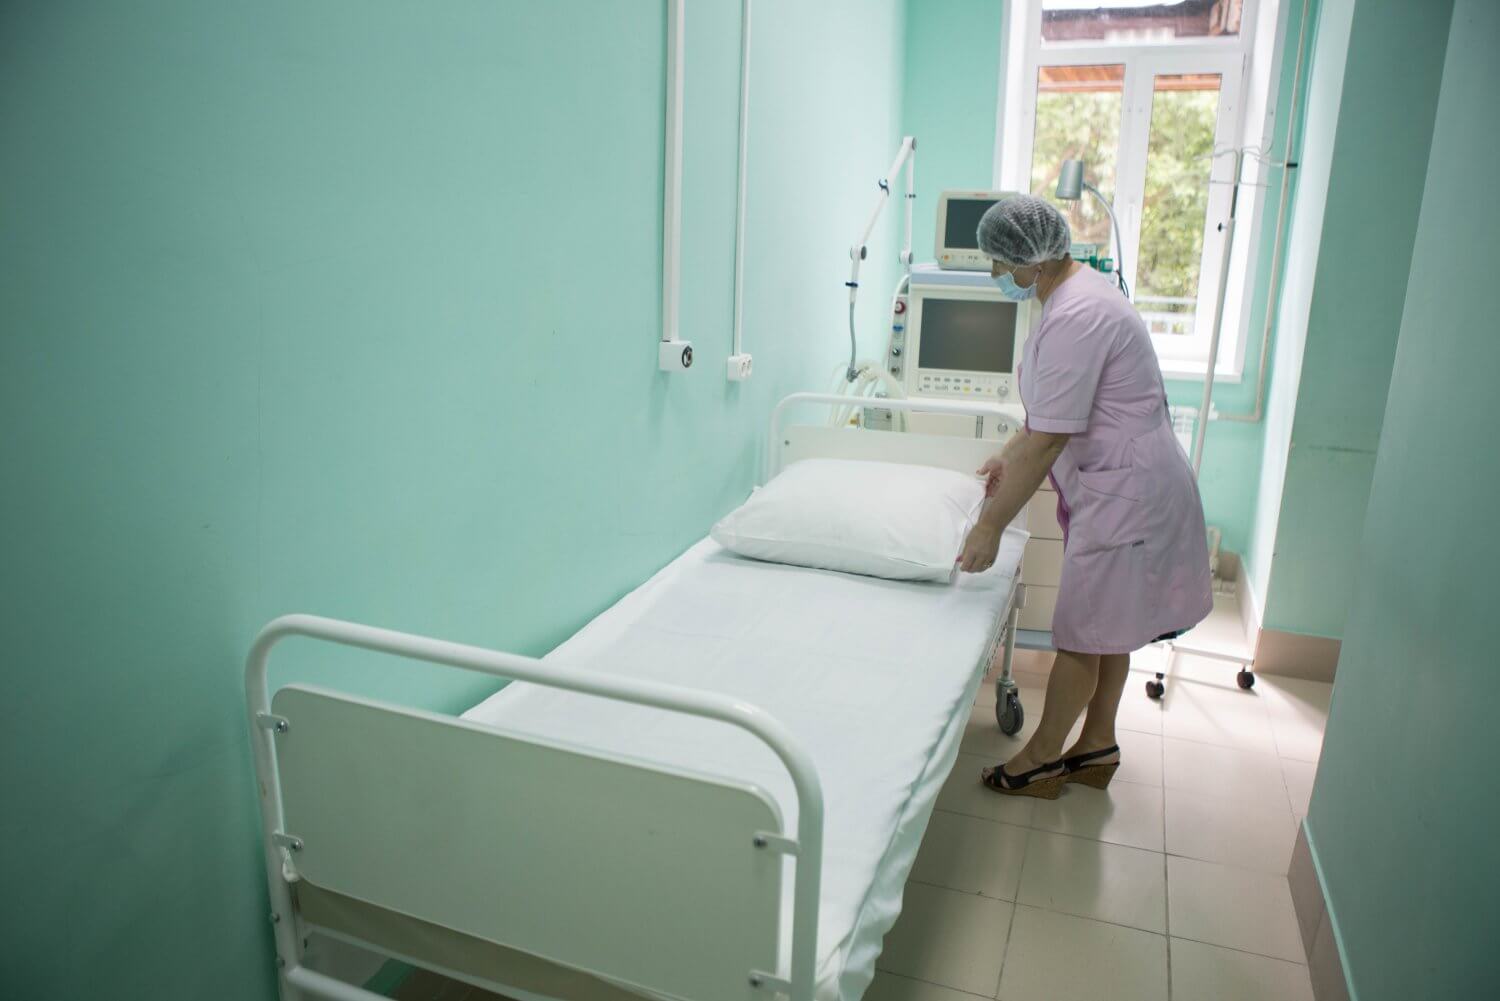 За время пандемии ОМК помогла больнице десятью млн рублей